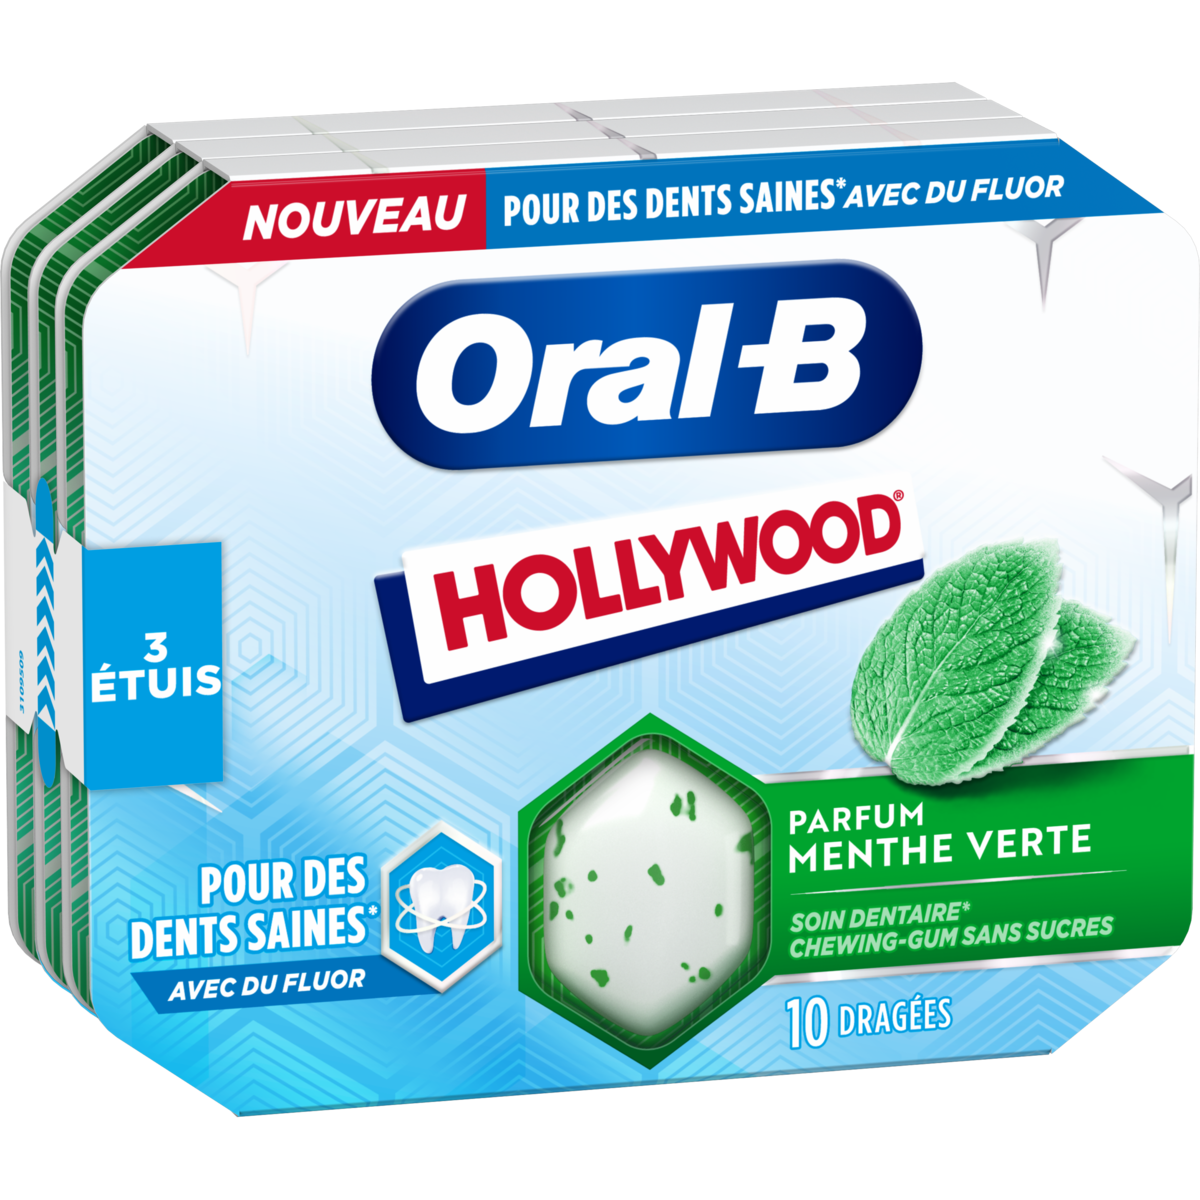 HOLLYWOOD Oral-B Chewing-gum menthe verte au fluor sans sucres 3x10 dragées  3x17g pas cher 